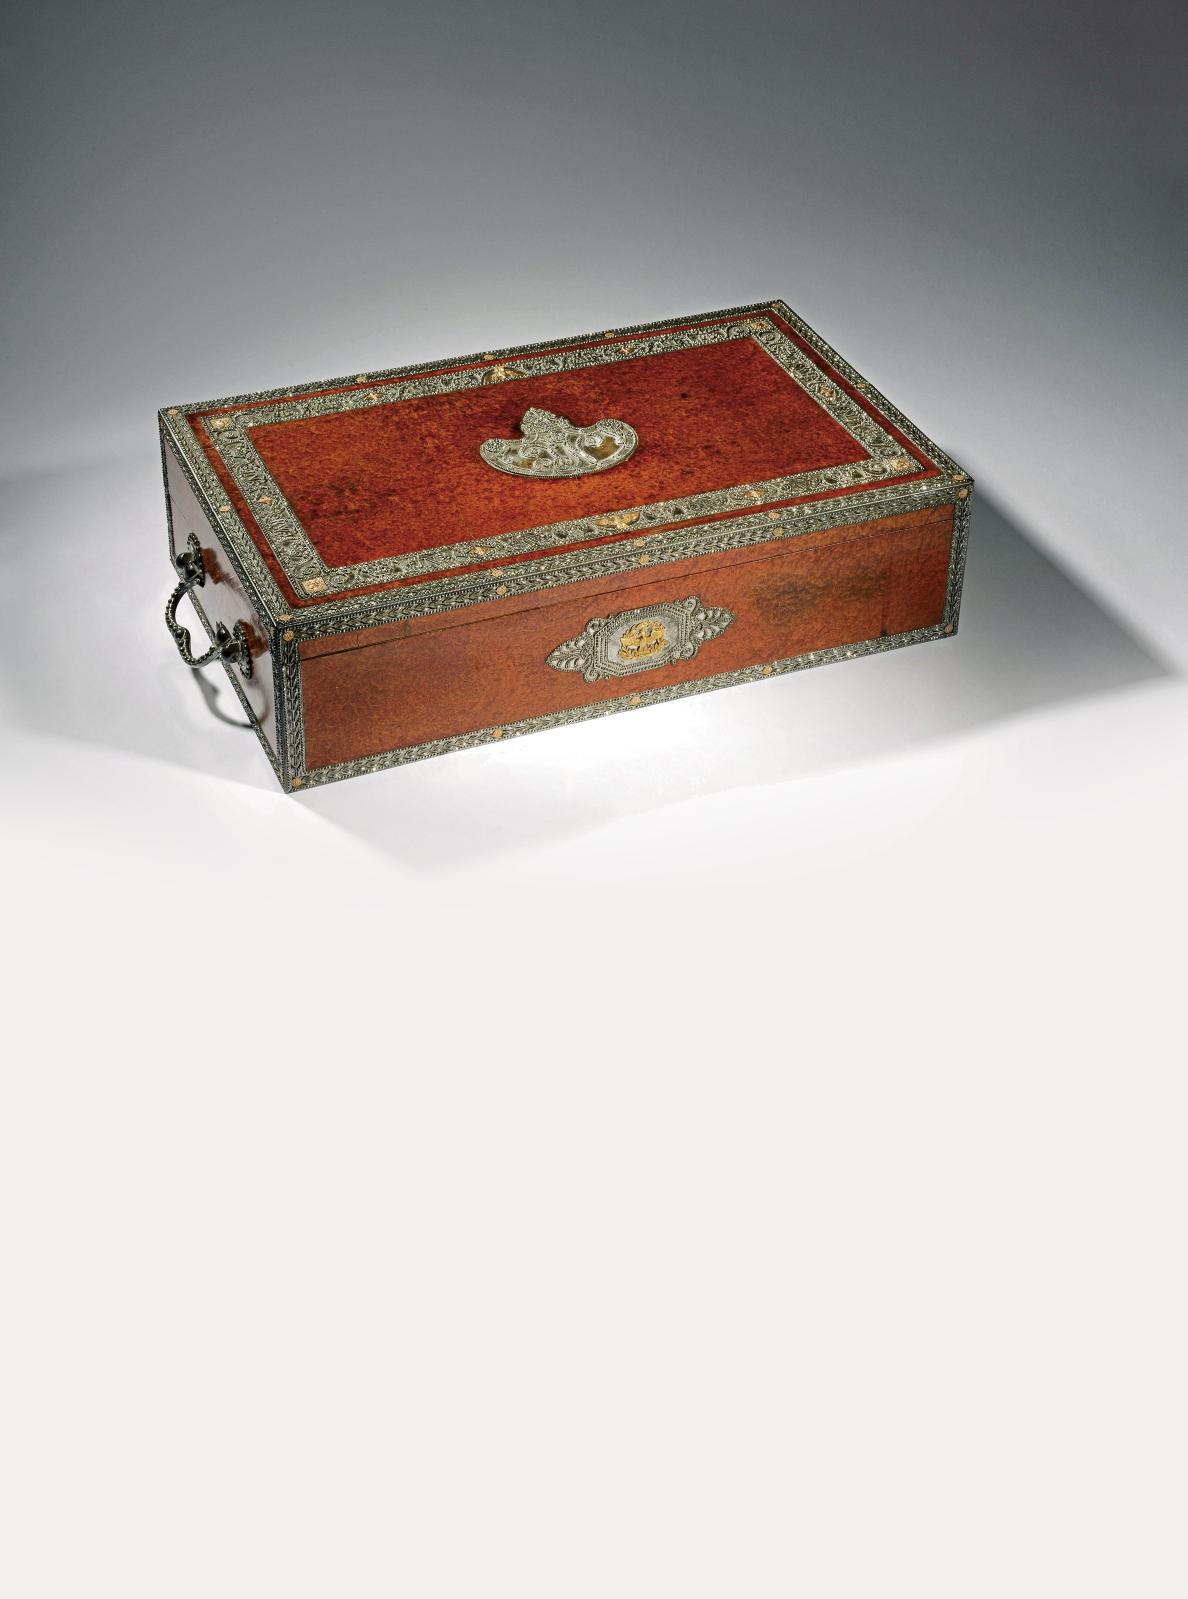 368 750 €Martin Guillaume Biennais, vers 1807-1809, coffret écritoire du roi Jérôme, or, vermeil, bronze doré, acajou plaqué de loupe d’orme, garnitur